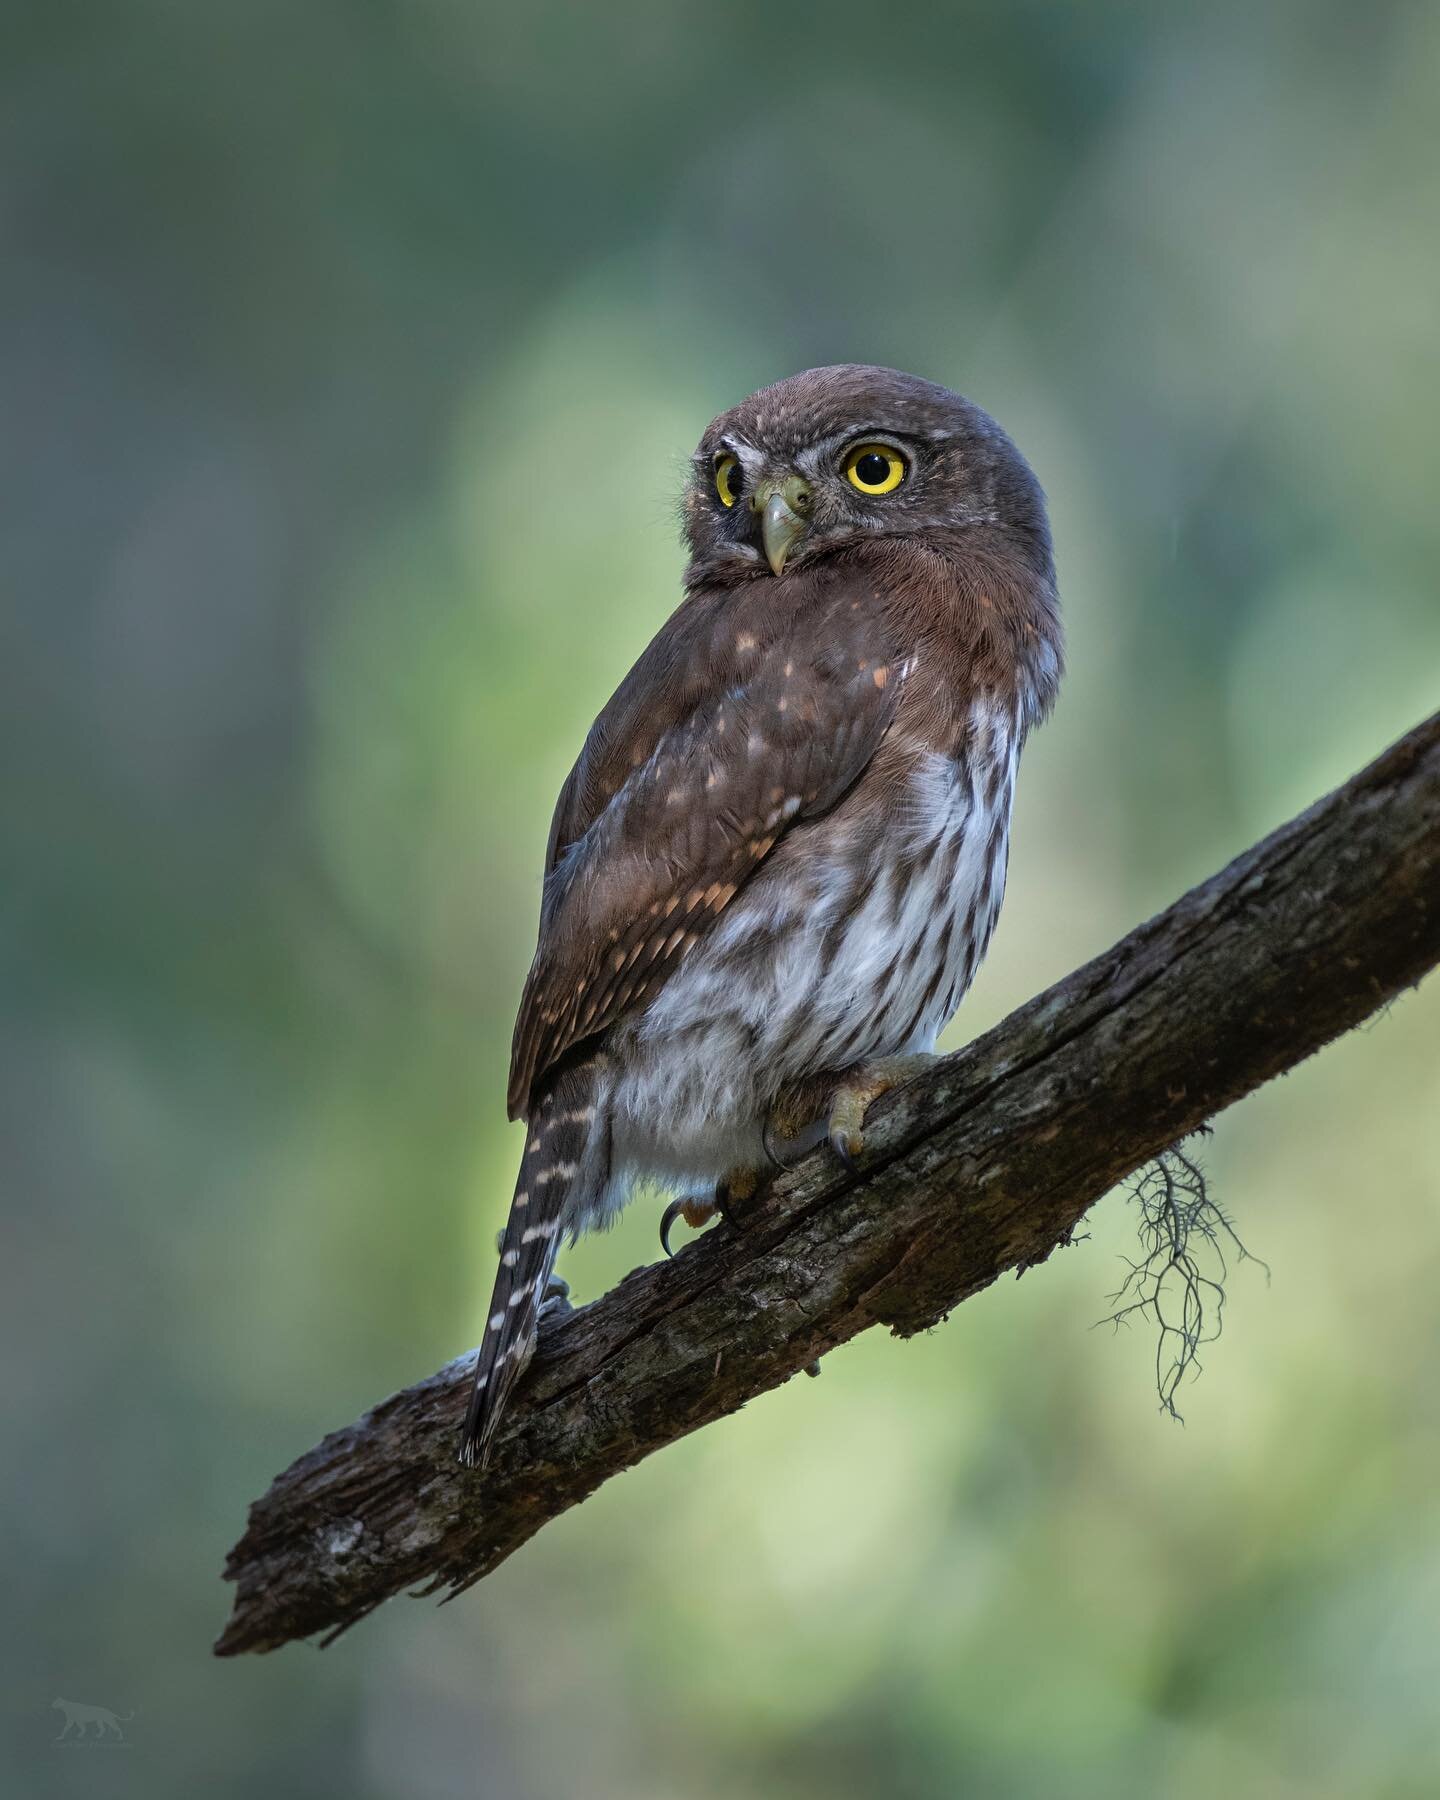 A dappled spotlight bathes a pygmy owl on its perch.